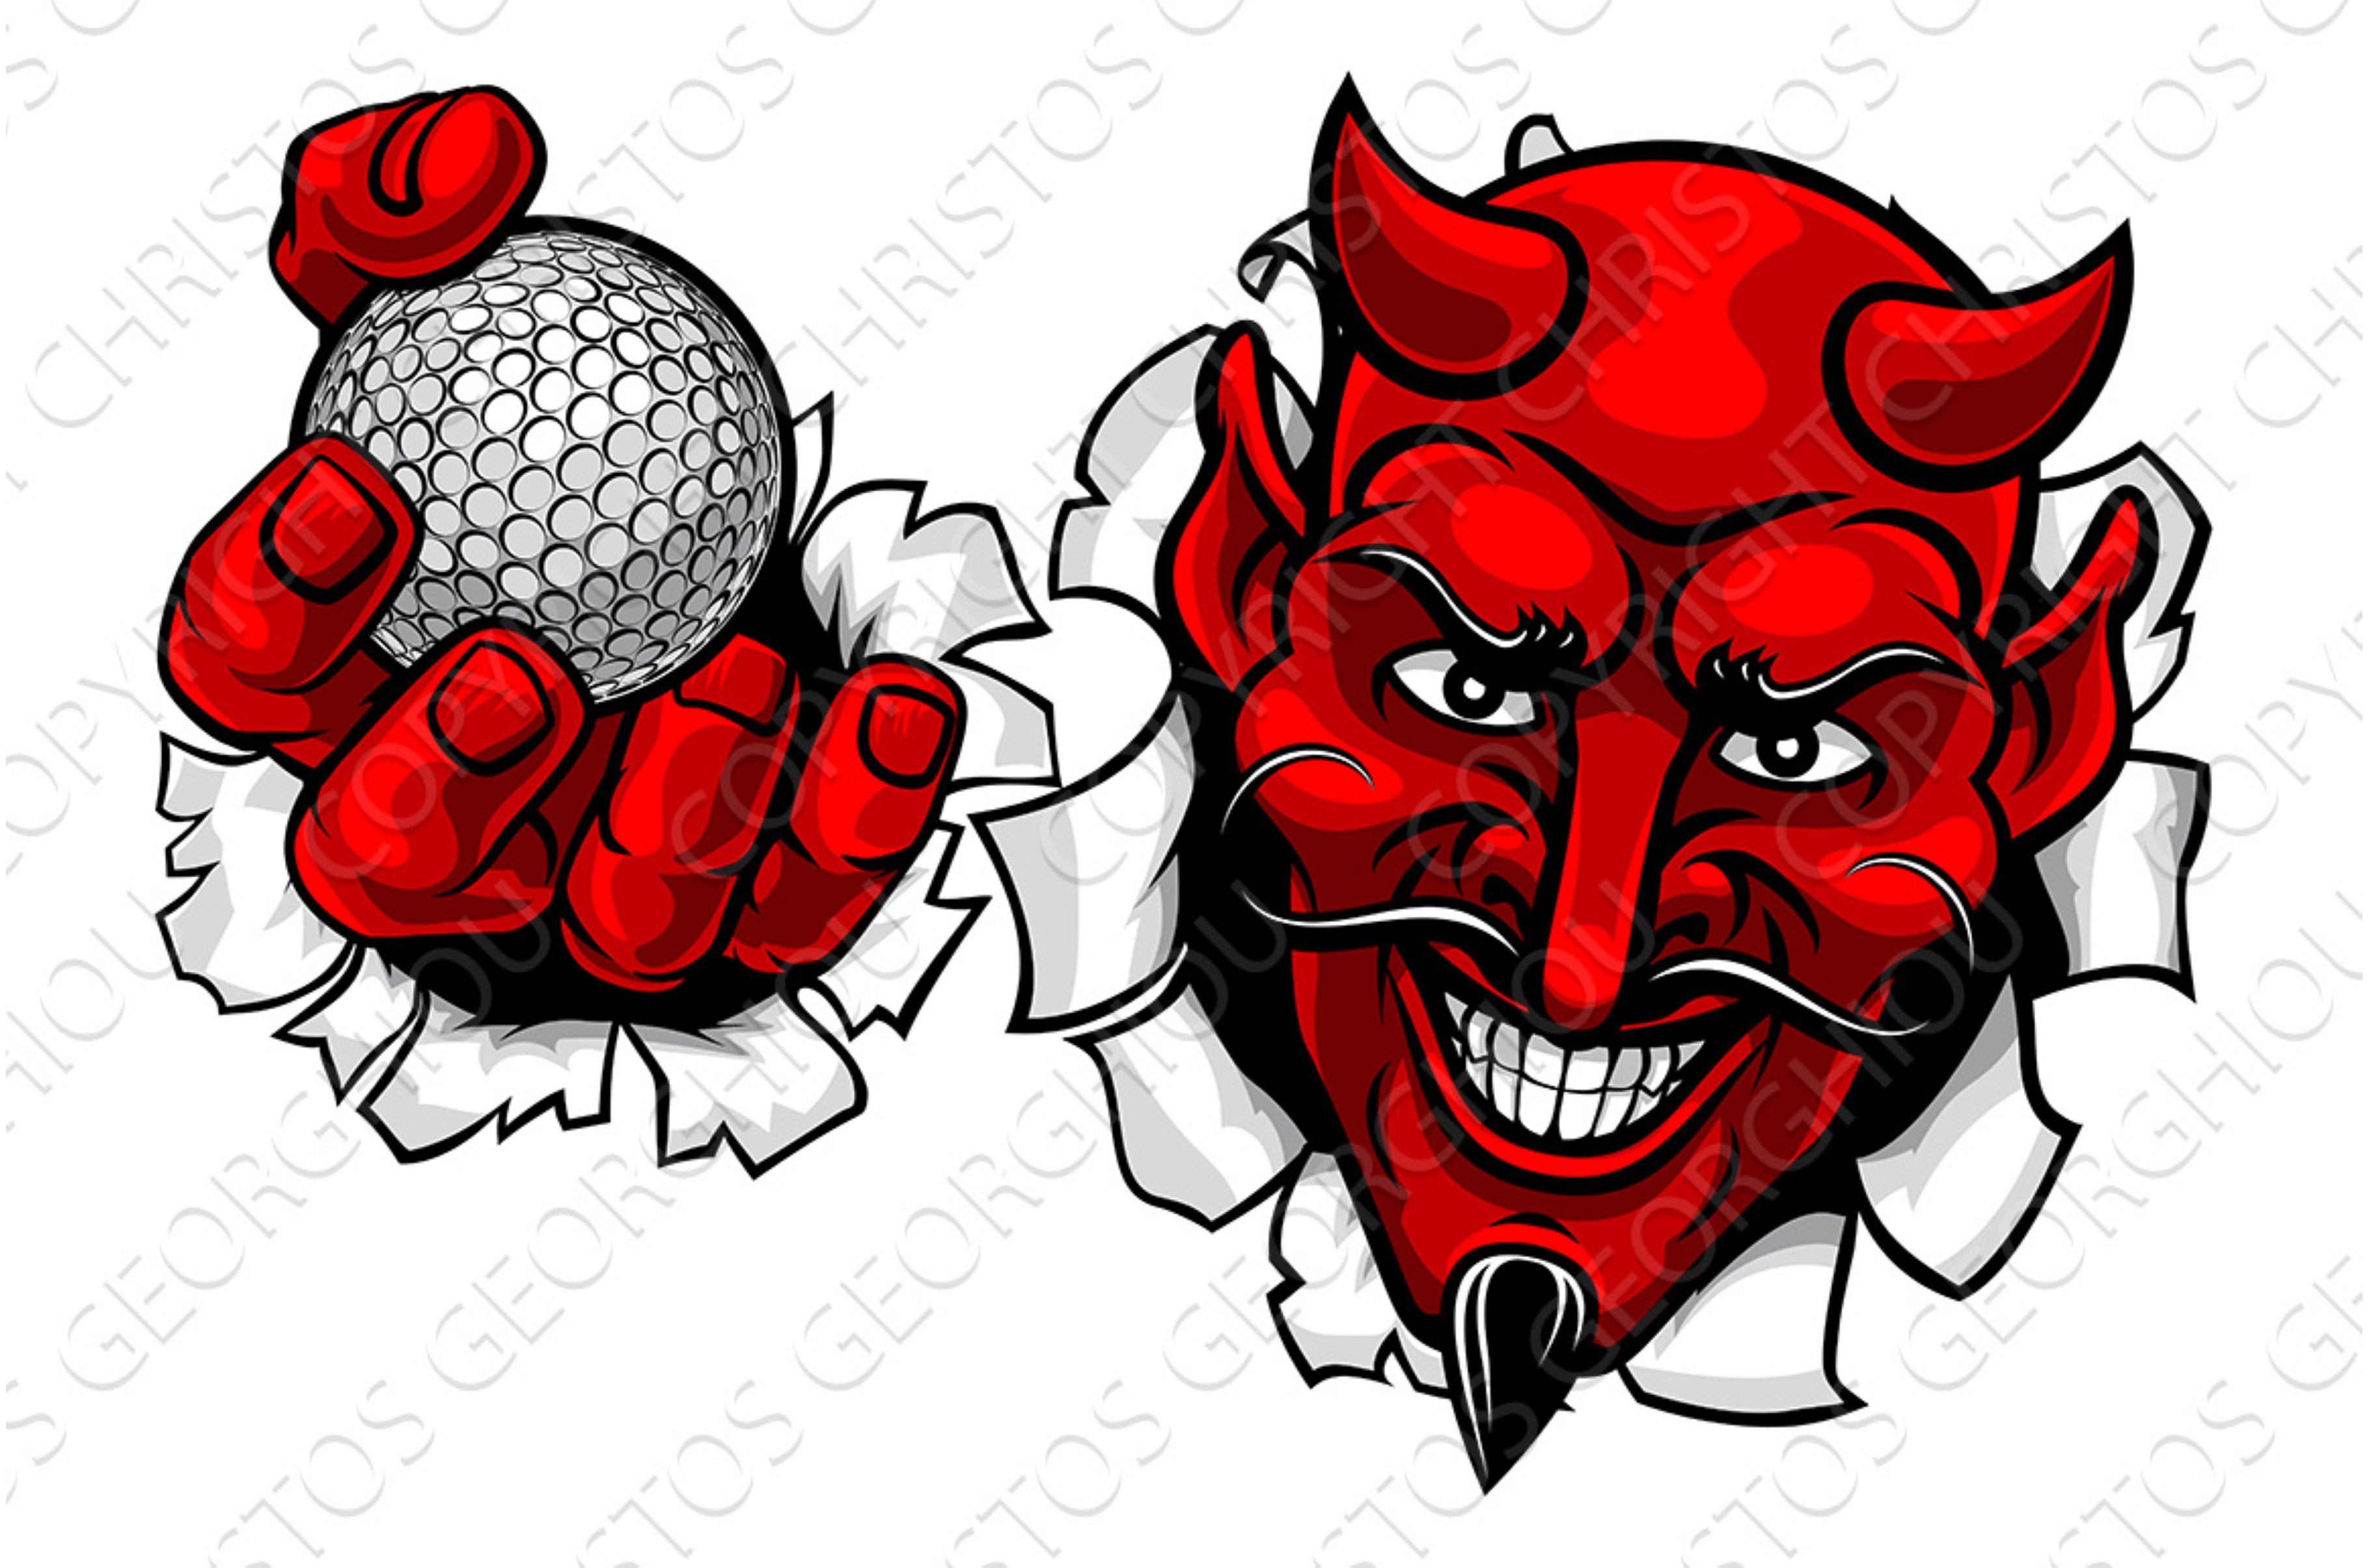 Devil Satan Golf Ball Sports Mascot cover image.